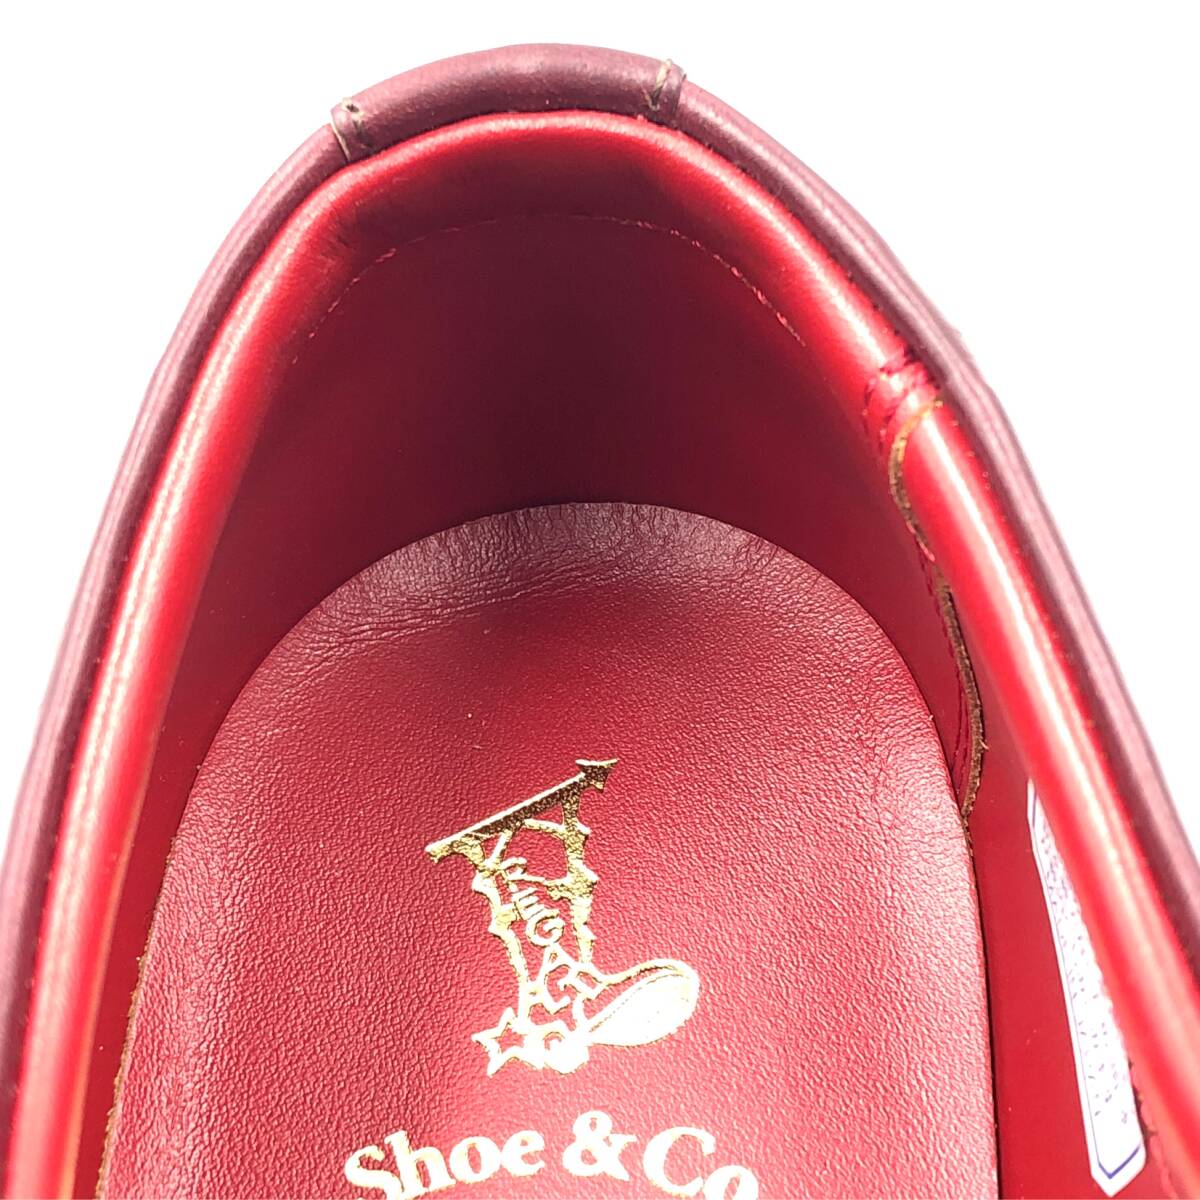 即決 未使用 REGAL Shoe & Co. リーガル 25cm 807S メンズ レザーシューズ モンクストラップ バーガンディ 箱付 革靴 皮靴 ビジネス